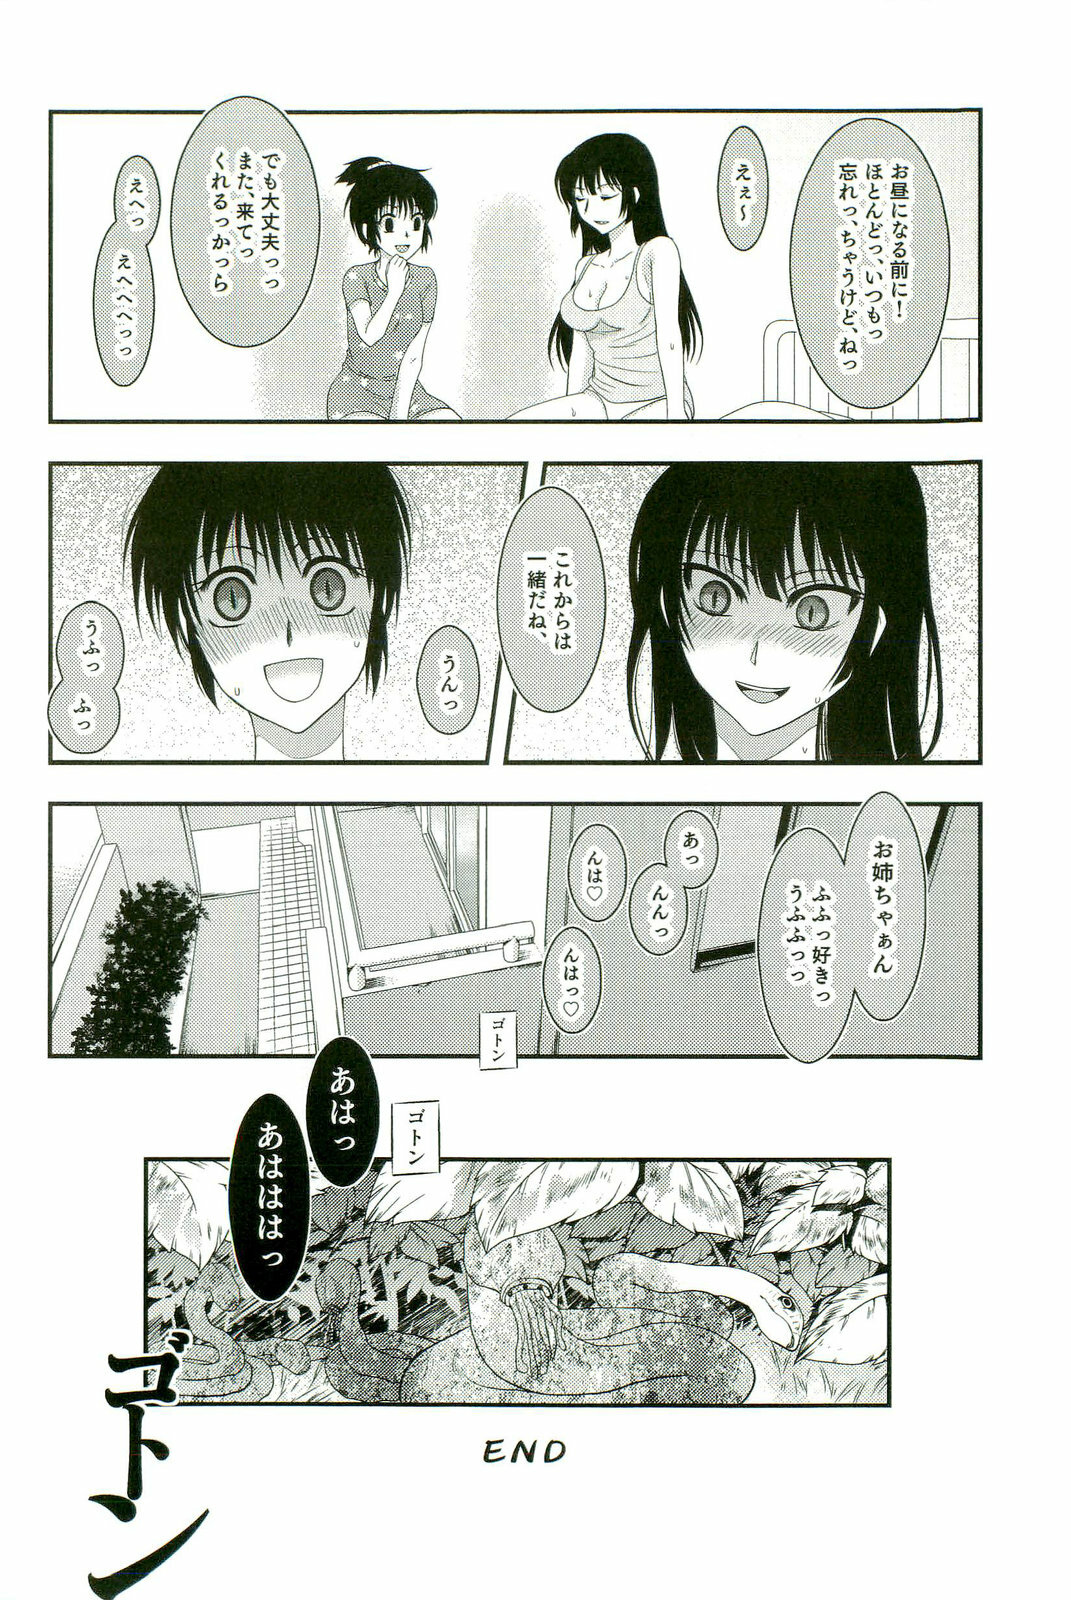 [Anthology] Shokushu! Etsuraku no Utage 2 page 41 full